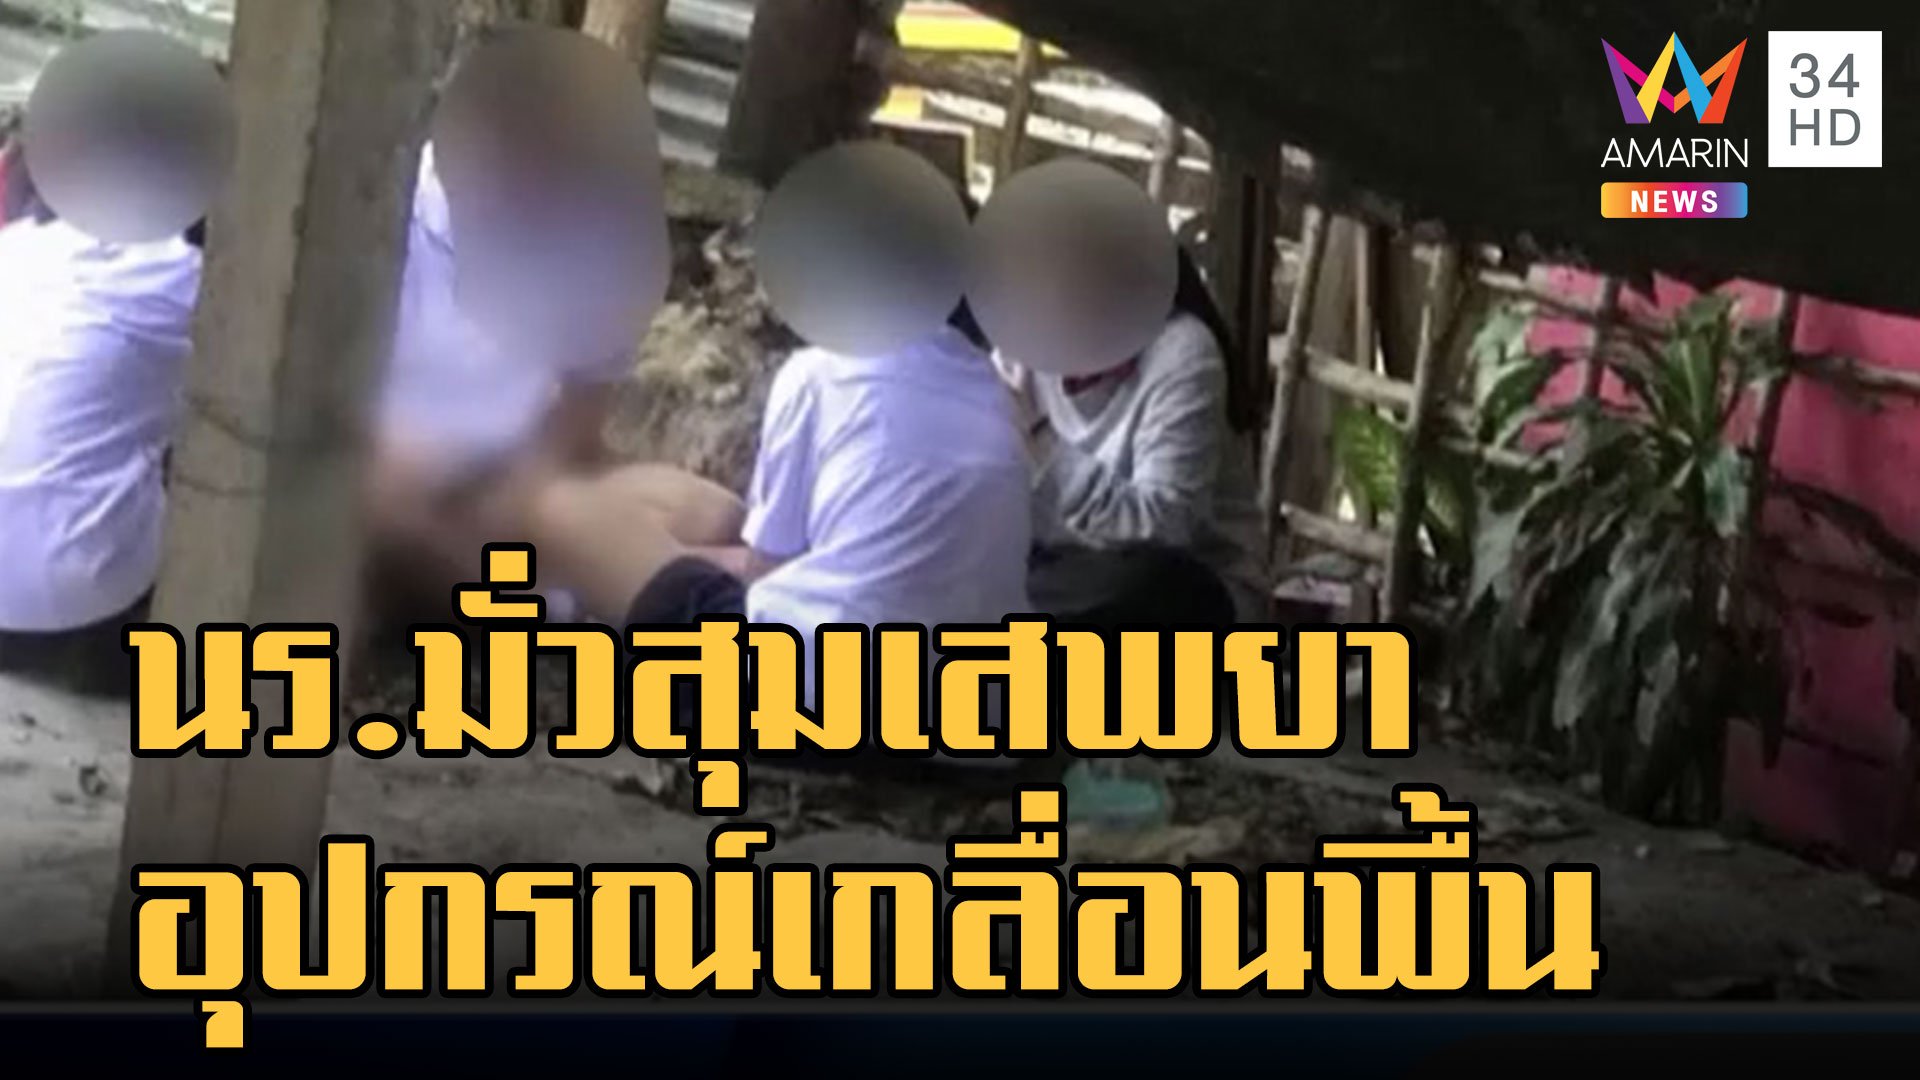 เด็ก นร.มั่วสุมนั่งเสพกัญชา ตำรวจลงพื้นที่หนีกระเจิง | ข่าวเที่ยงอมรินทร์ | 16 พ.ย. 65 | AMARIN TVHD34